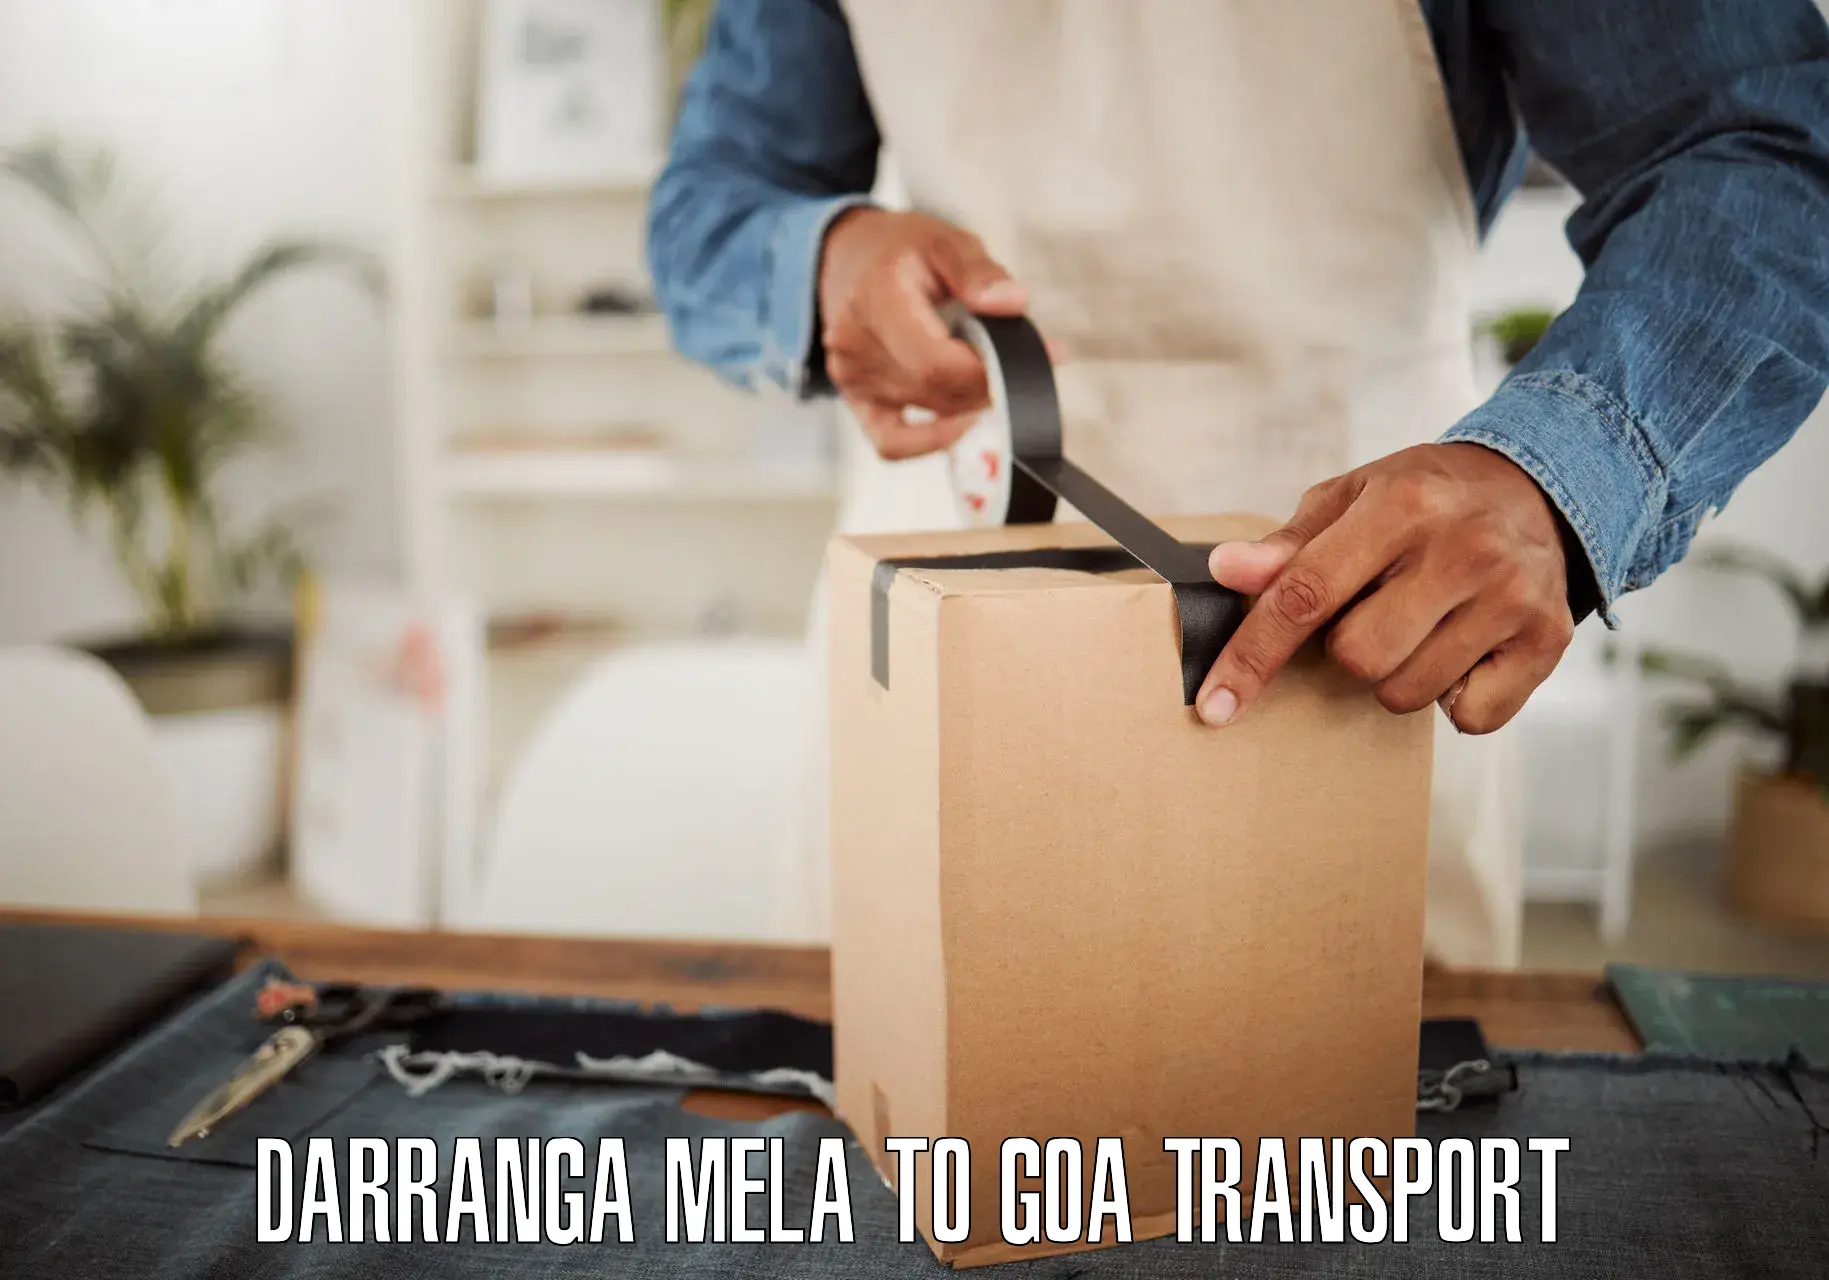 Cargo transport services Darranga Mela to Goa